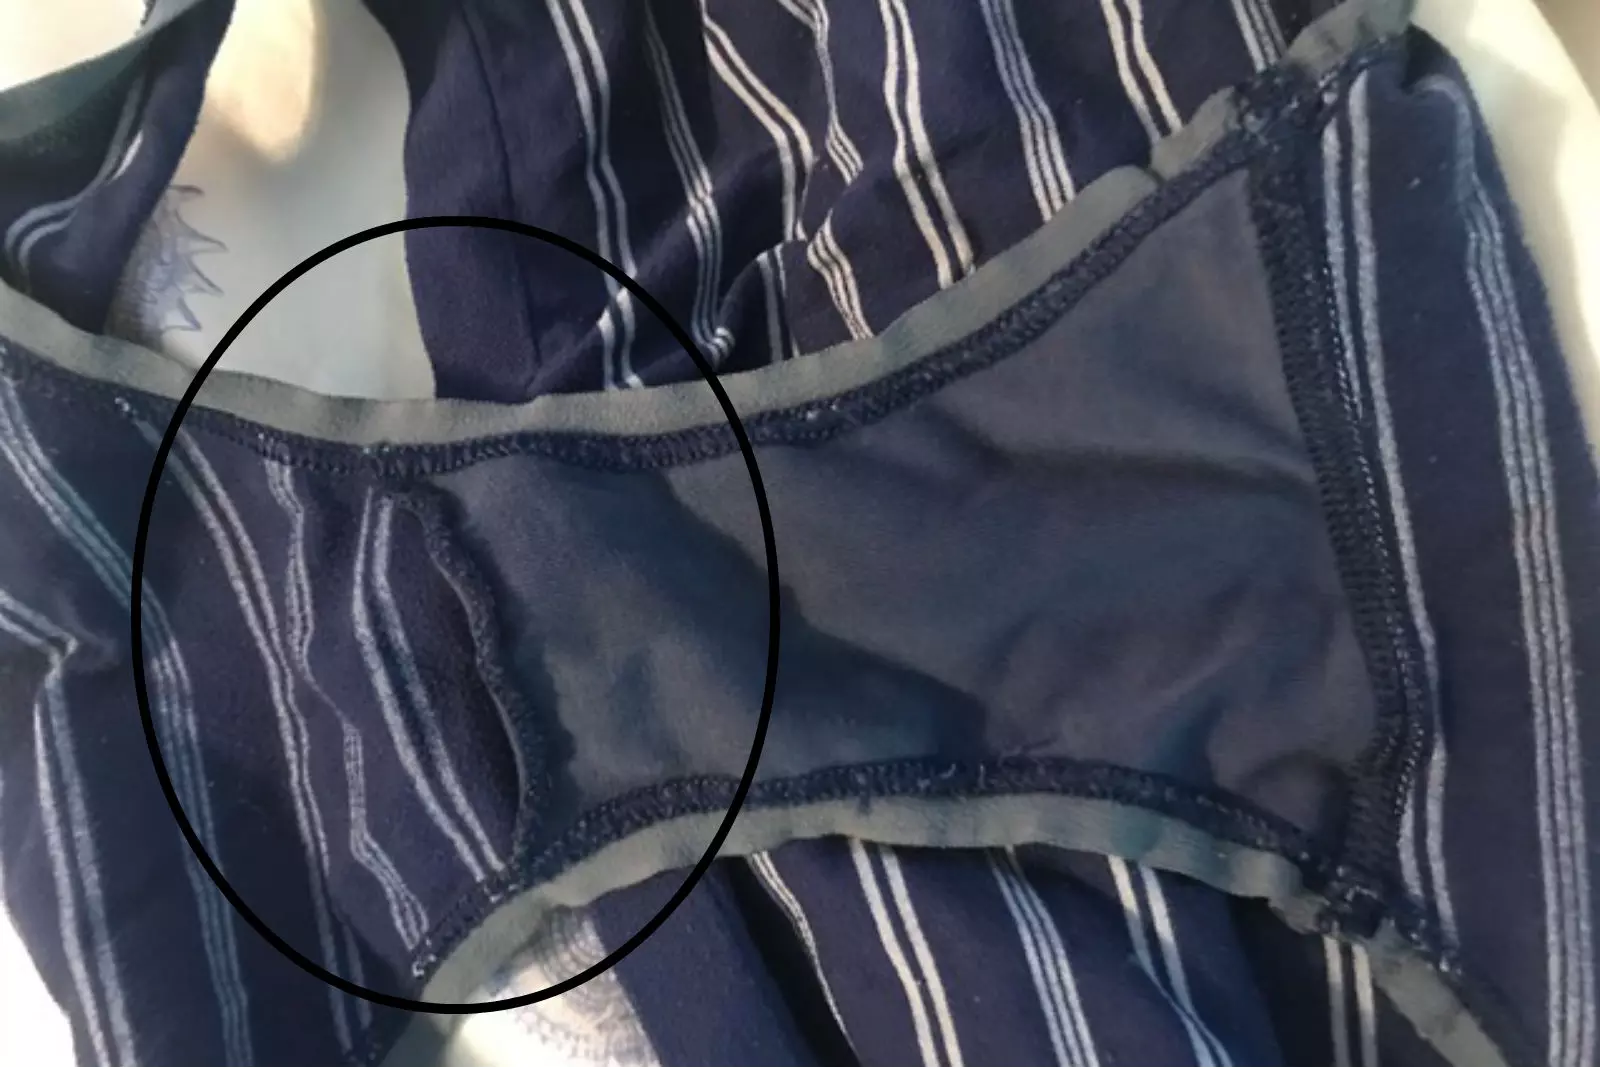 Why Do Women's Underwear Have Pockets?